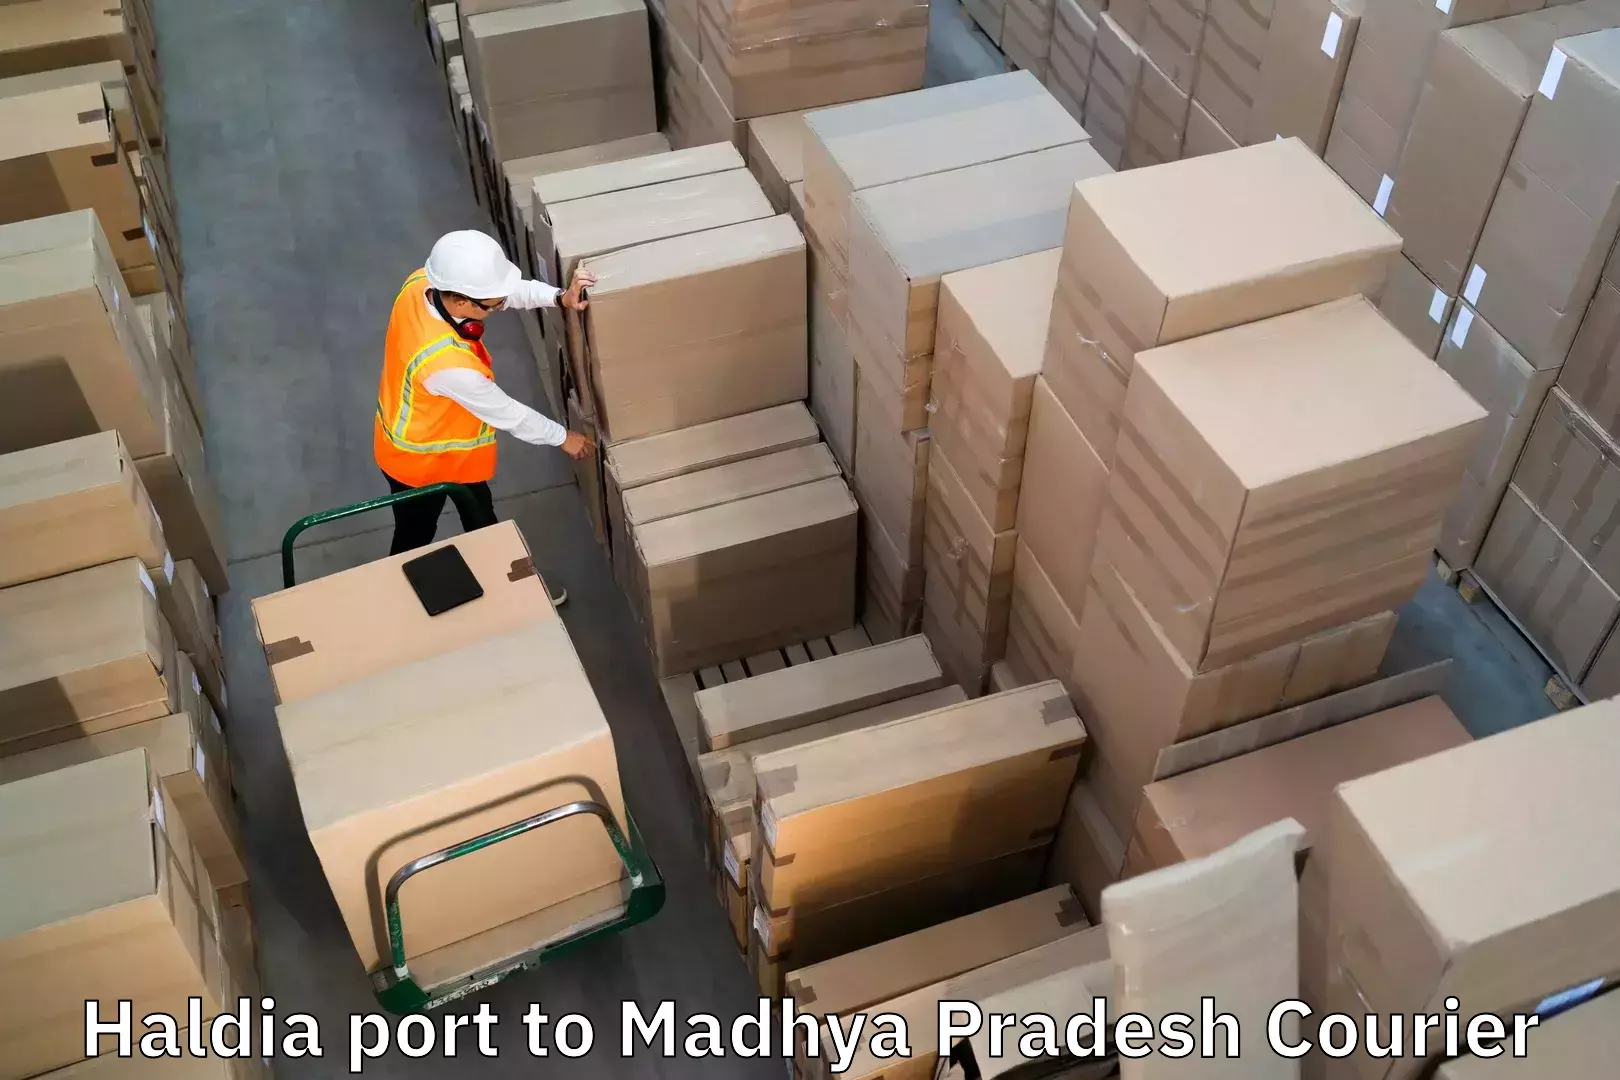 Holiday season luggage delivery Haldia port to Gadarwara